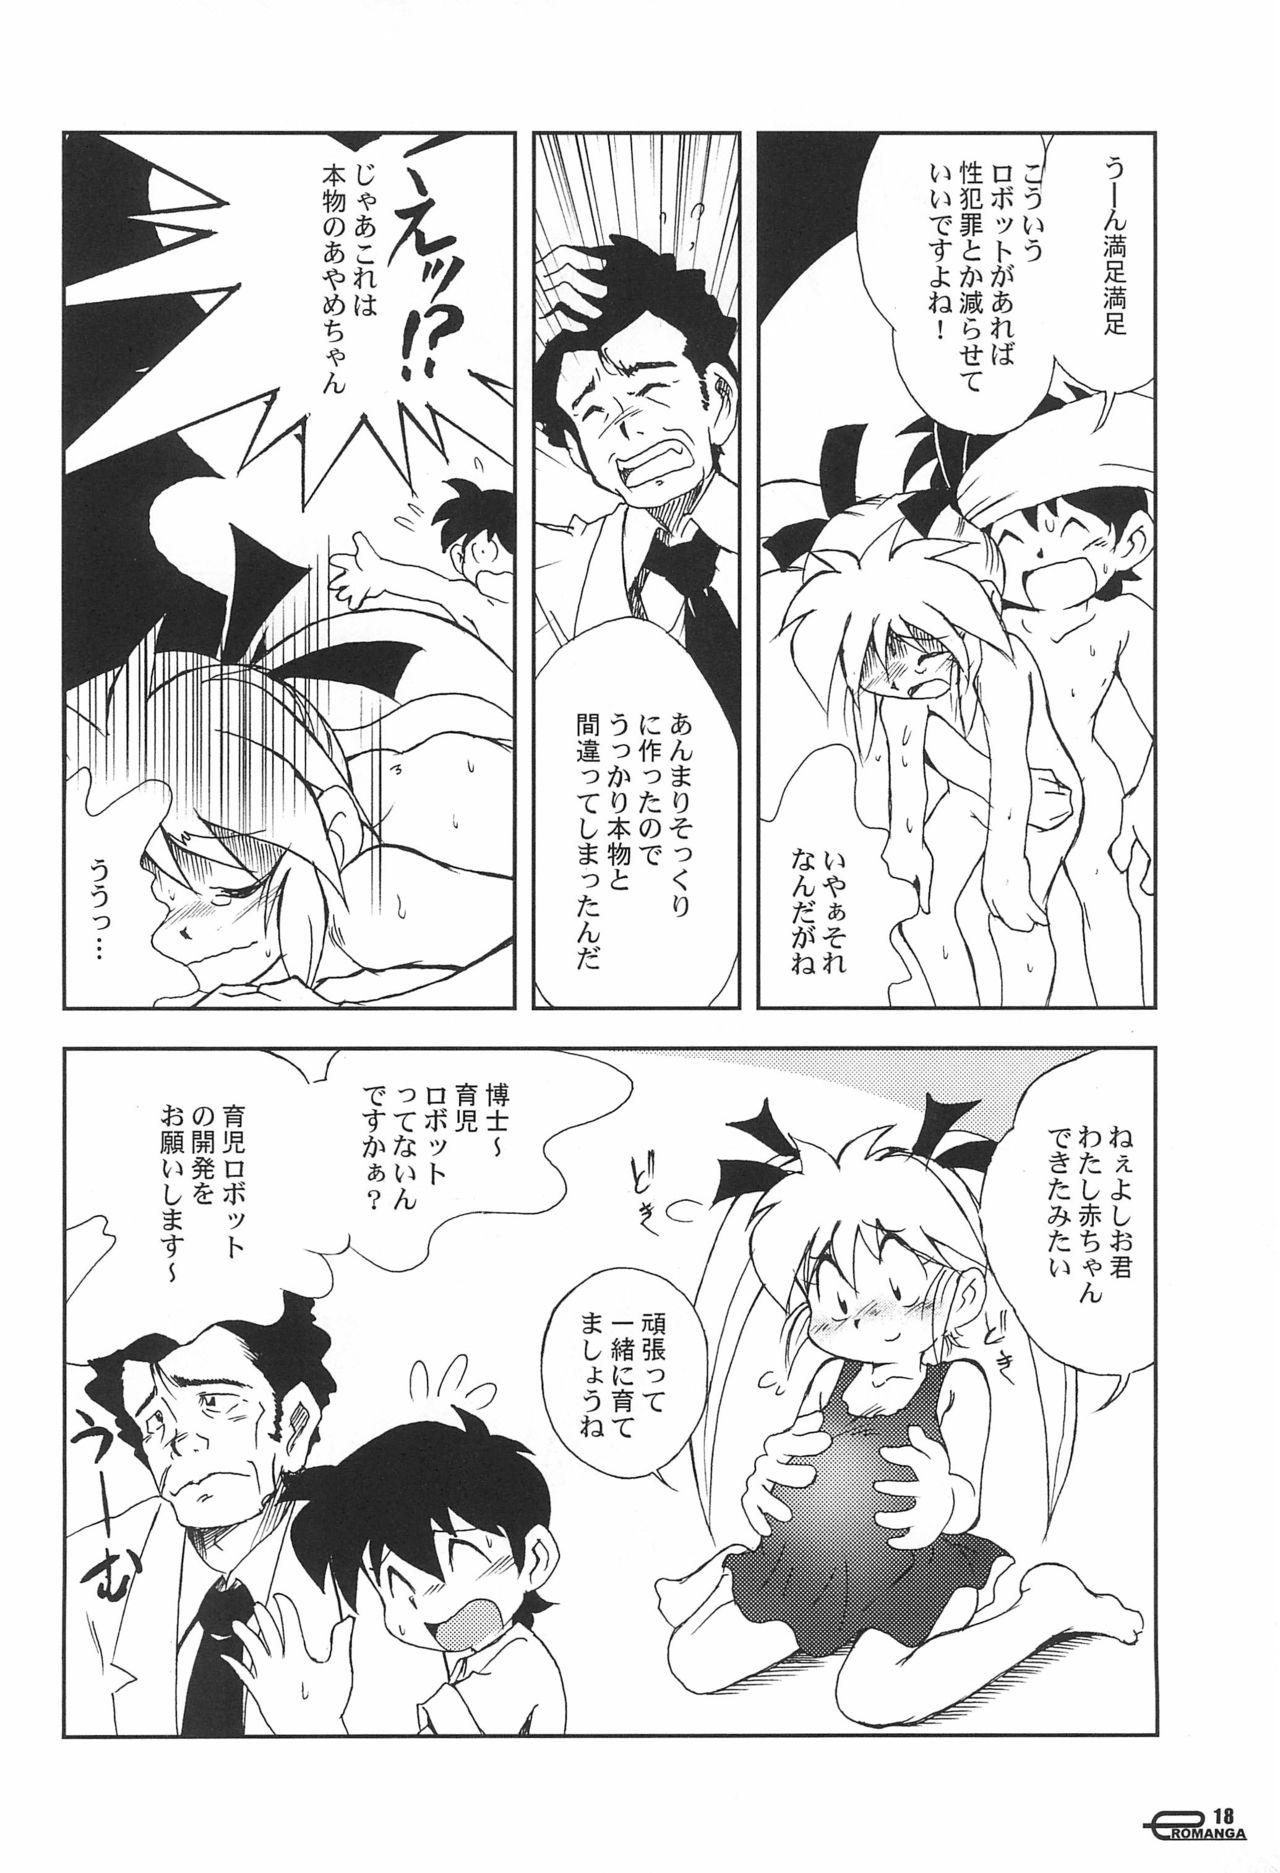 Manga Science 5 17